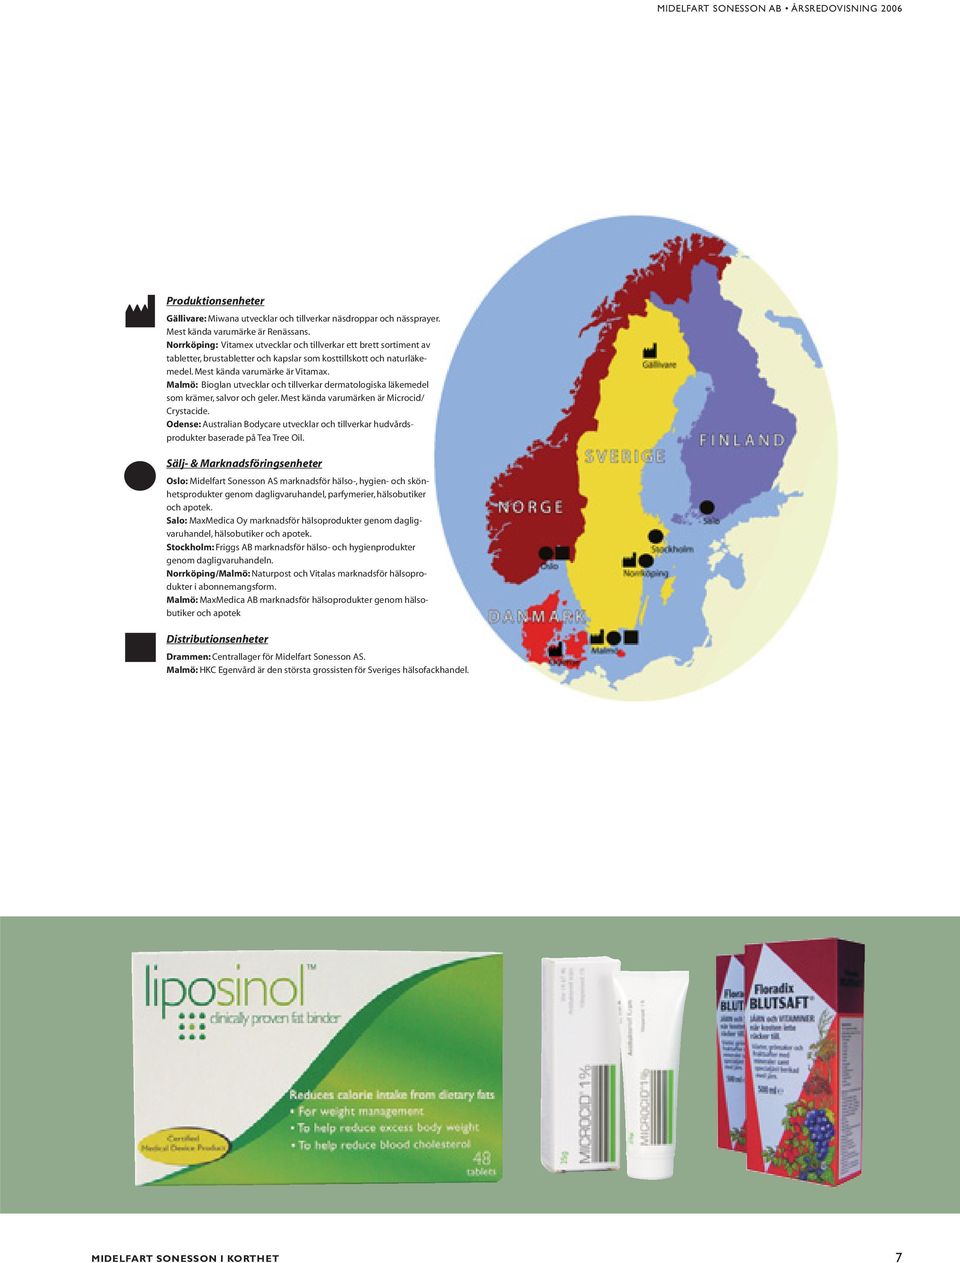 Malmö: Bioglan utvecklar och tillverkar dermatologiska läkemedel som krämer, salvor och geler. Mest kända varumärken är Microcid/ Crystacide.